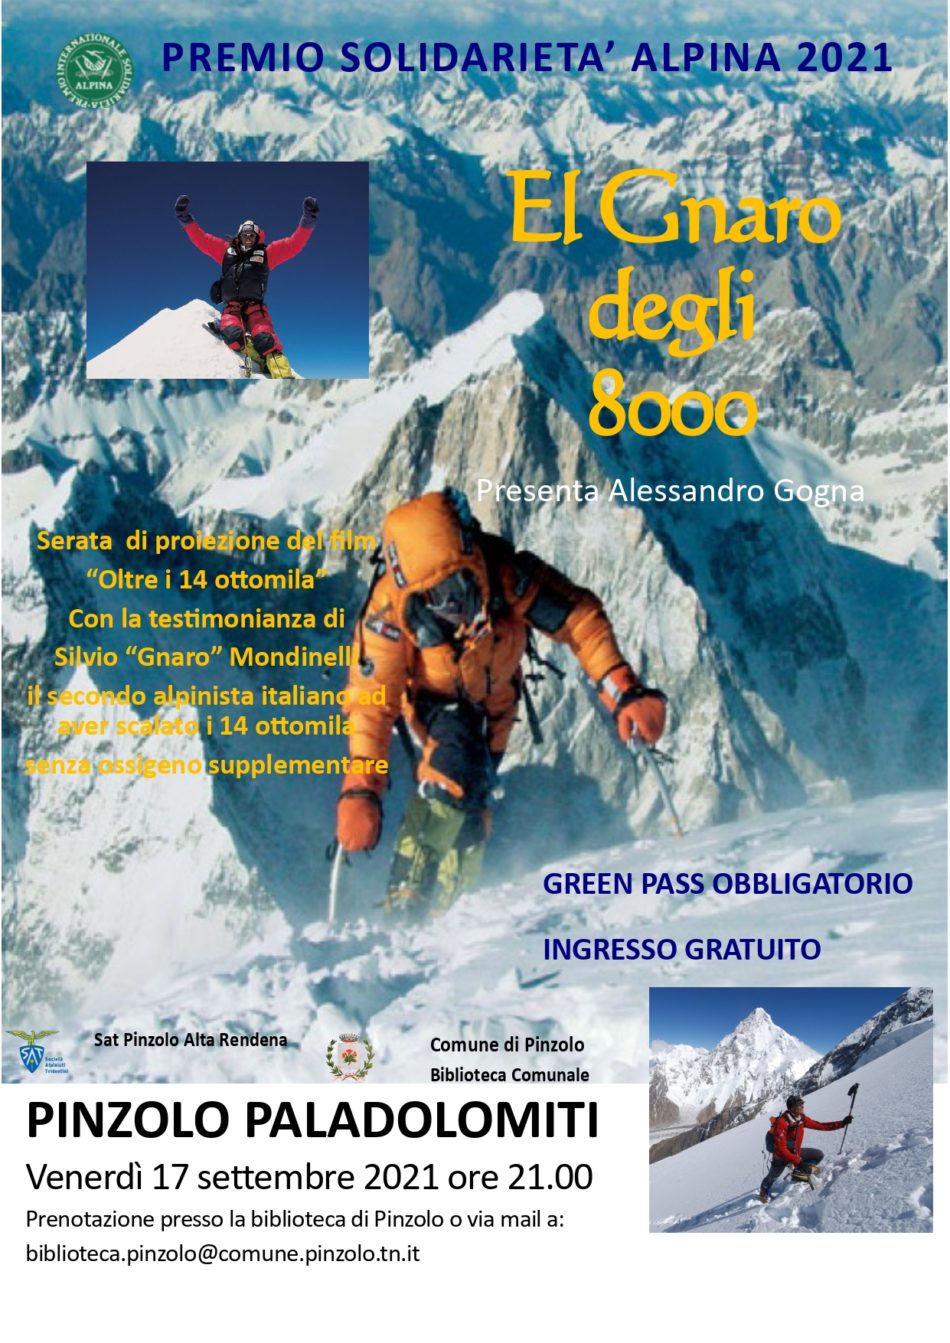 Paladolomiti 17 settembre: El Gnaro degli 8000 - Campane di Pinzolo.it